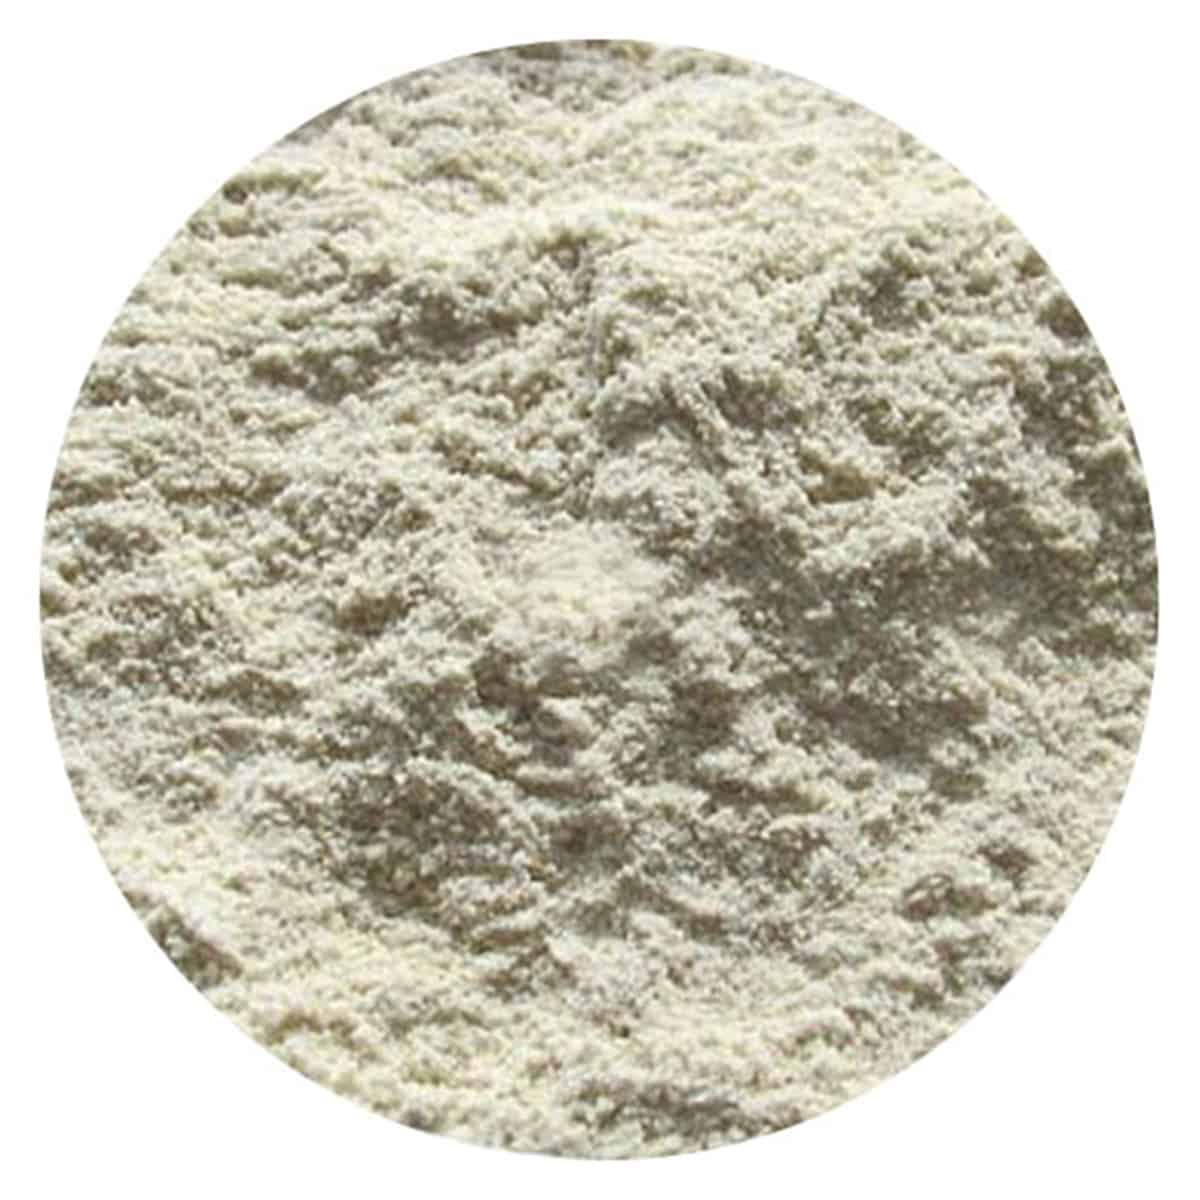 Buy IAG Foods Rye Flour - 1 kg